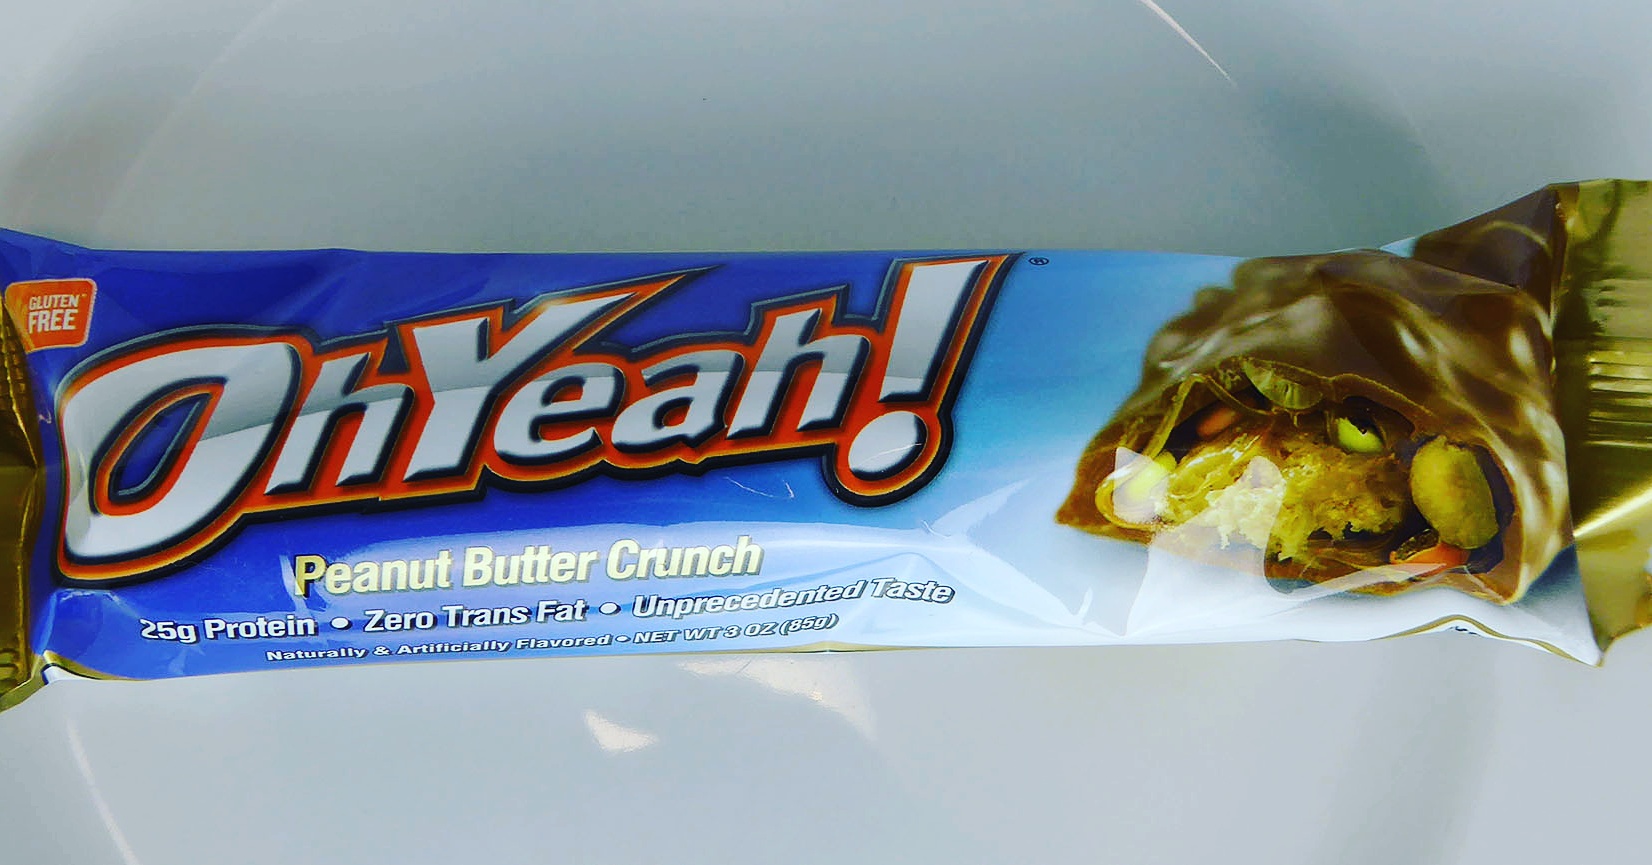 OhYeah! Peanut Butter Crunch Protein Bar